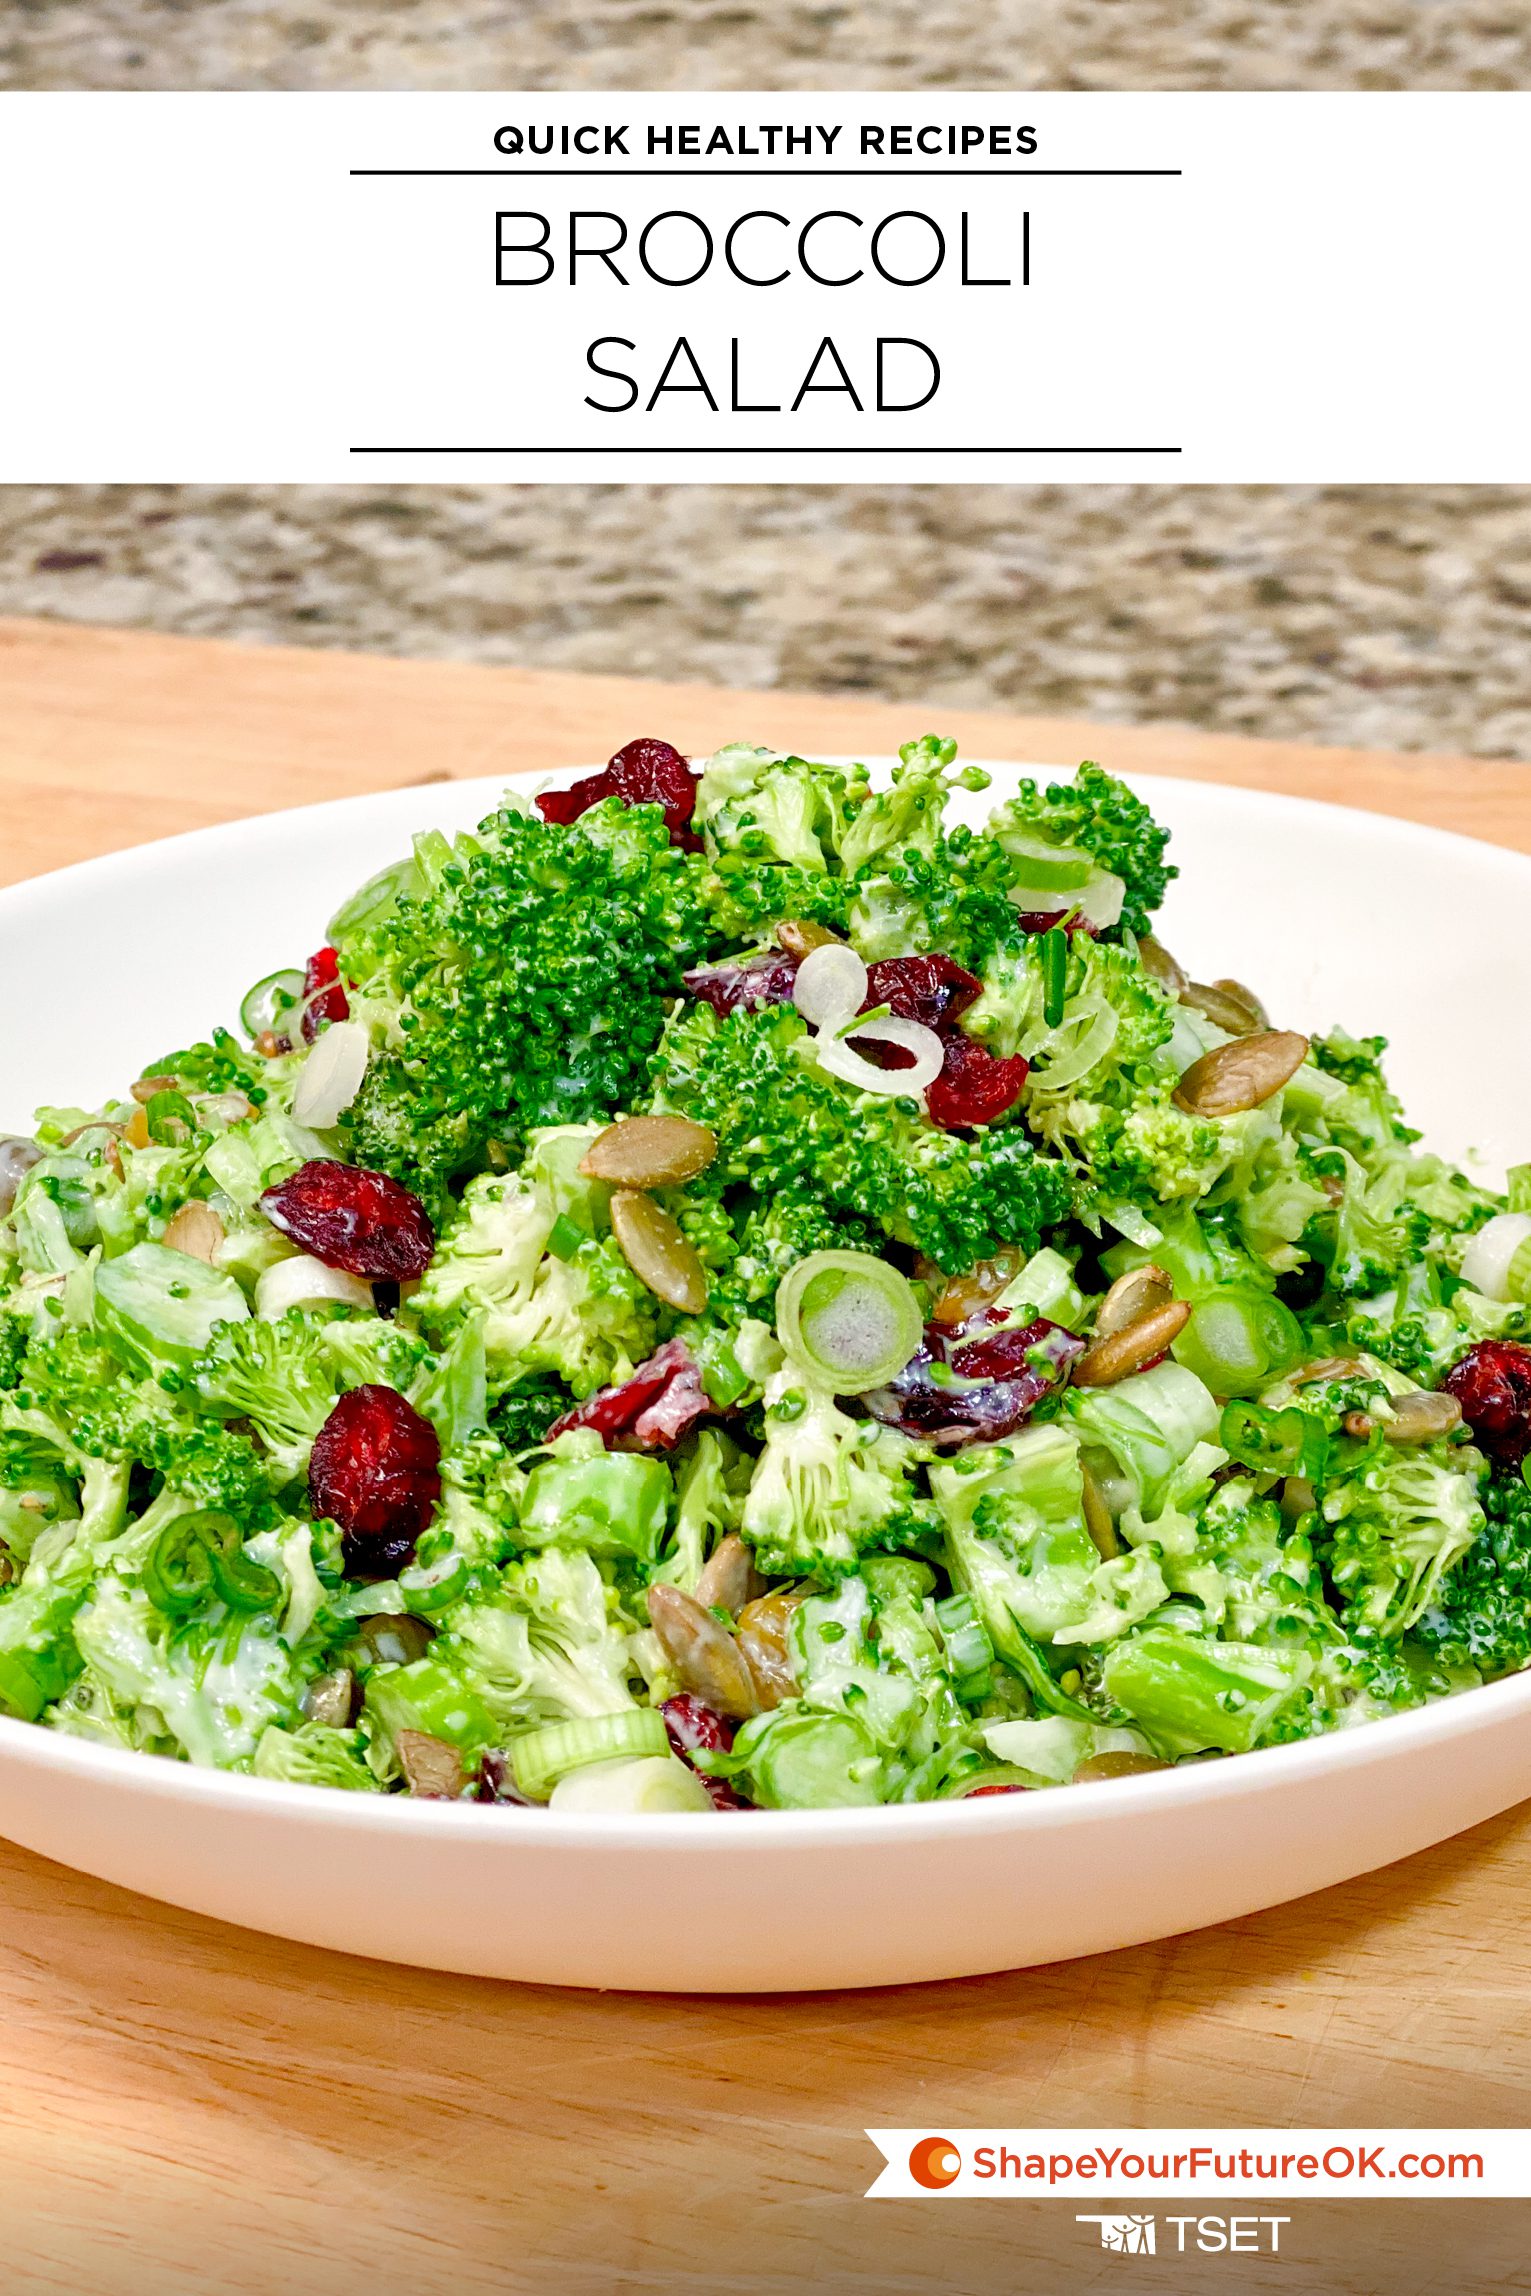 Broccoli Salad - Quick healthy recipe